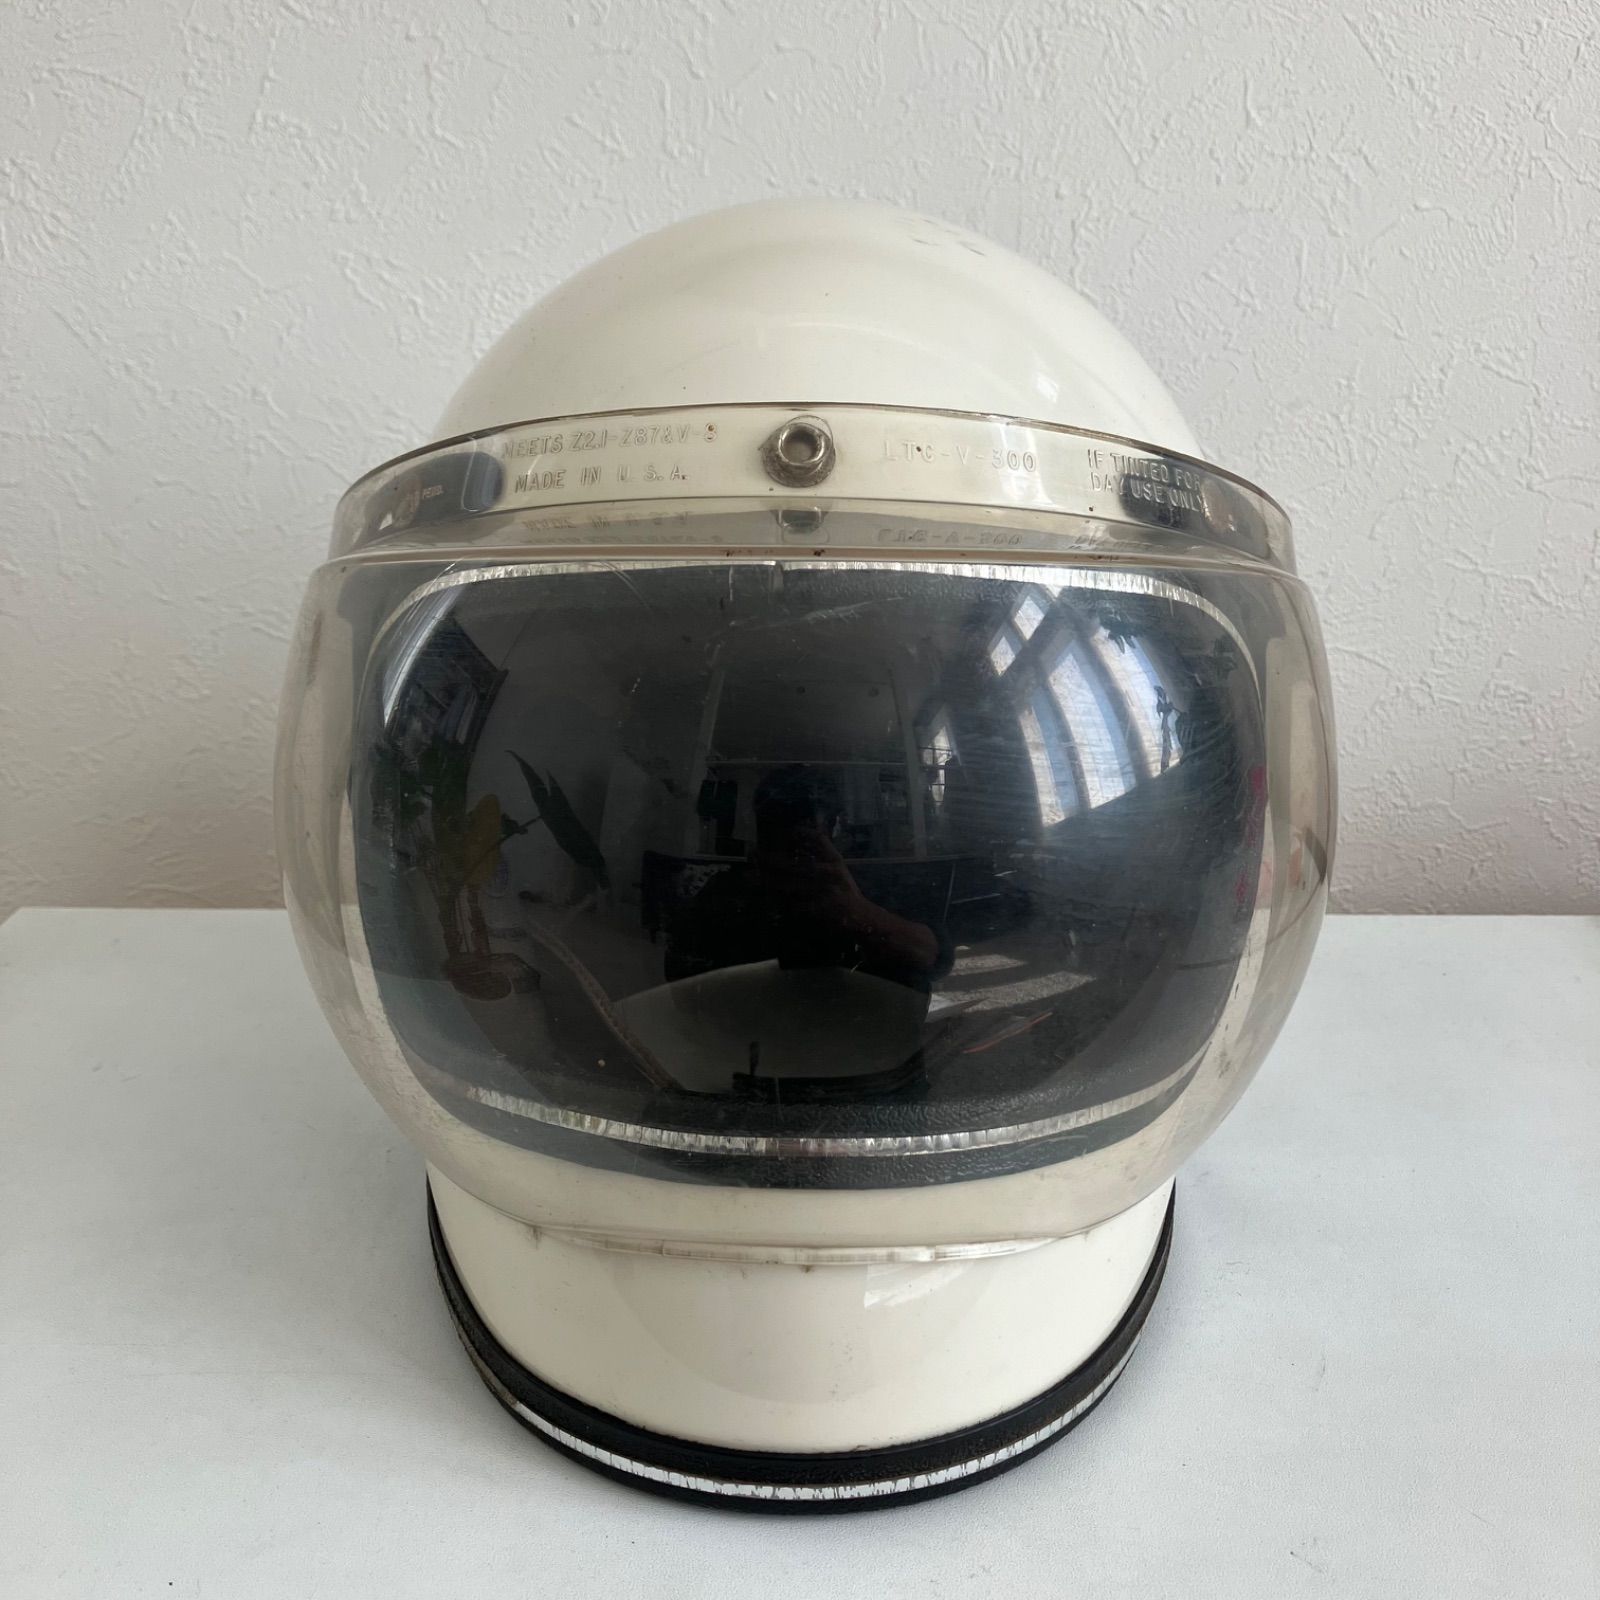 GRANT RG-9☆S-Mサイズ ビンテージヘルメット 1970年代 白 希少 旧車 